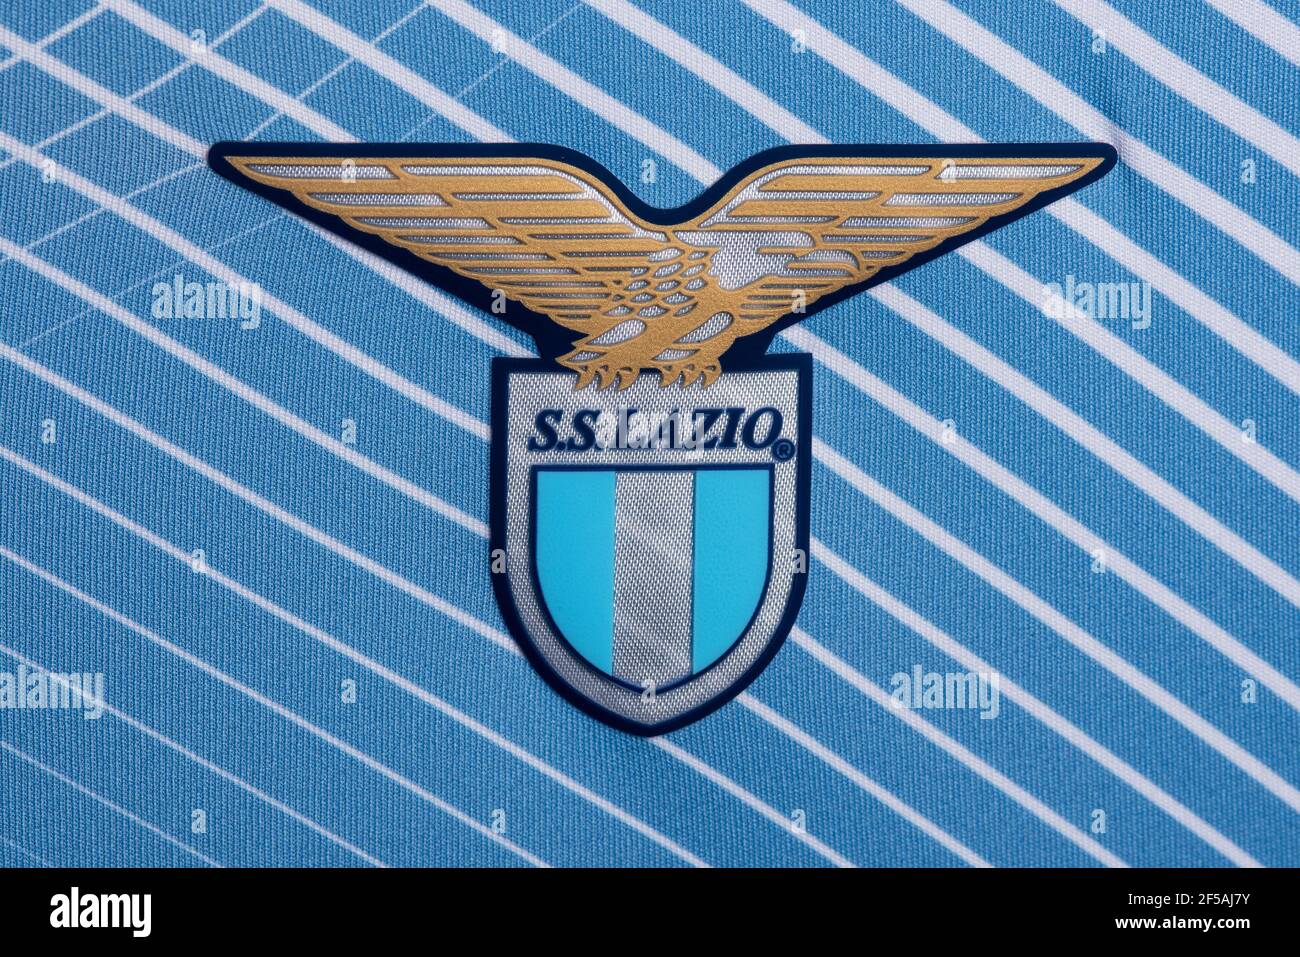 Primo piano della maglia S.S. Lazio Foto Stock